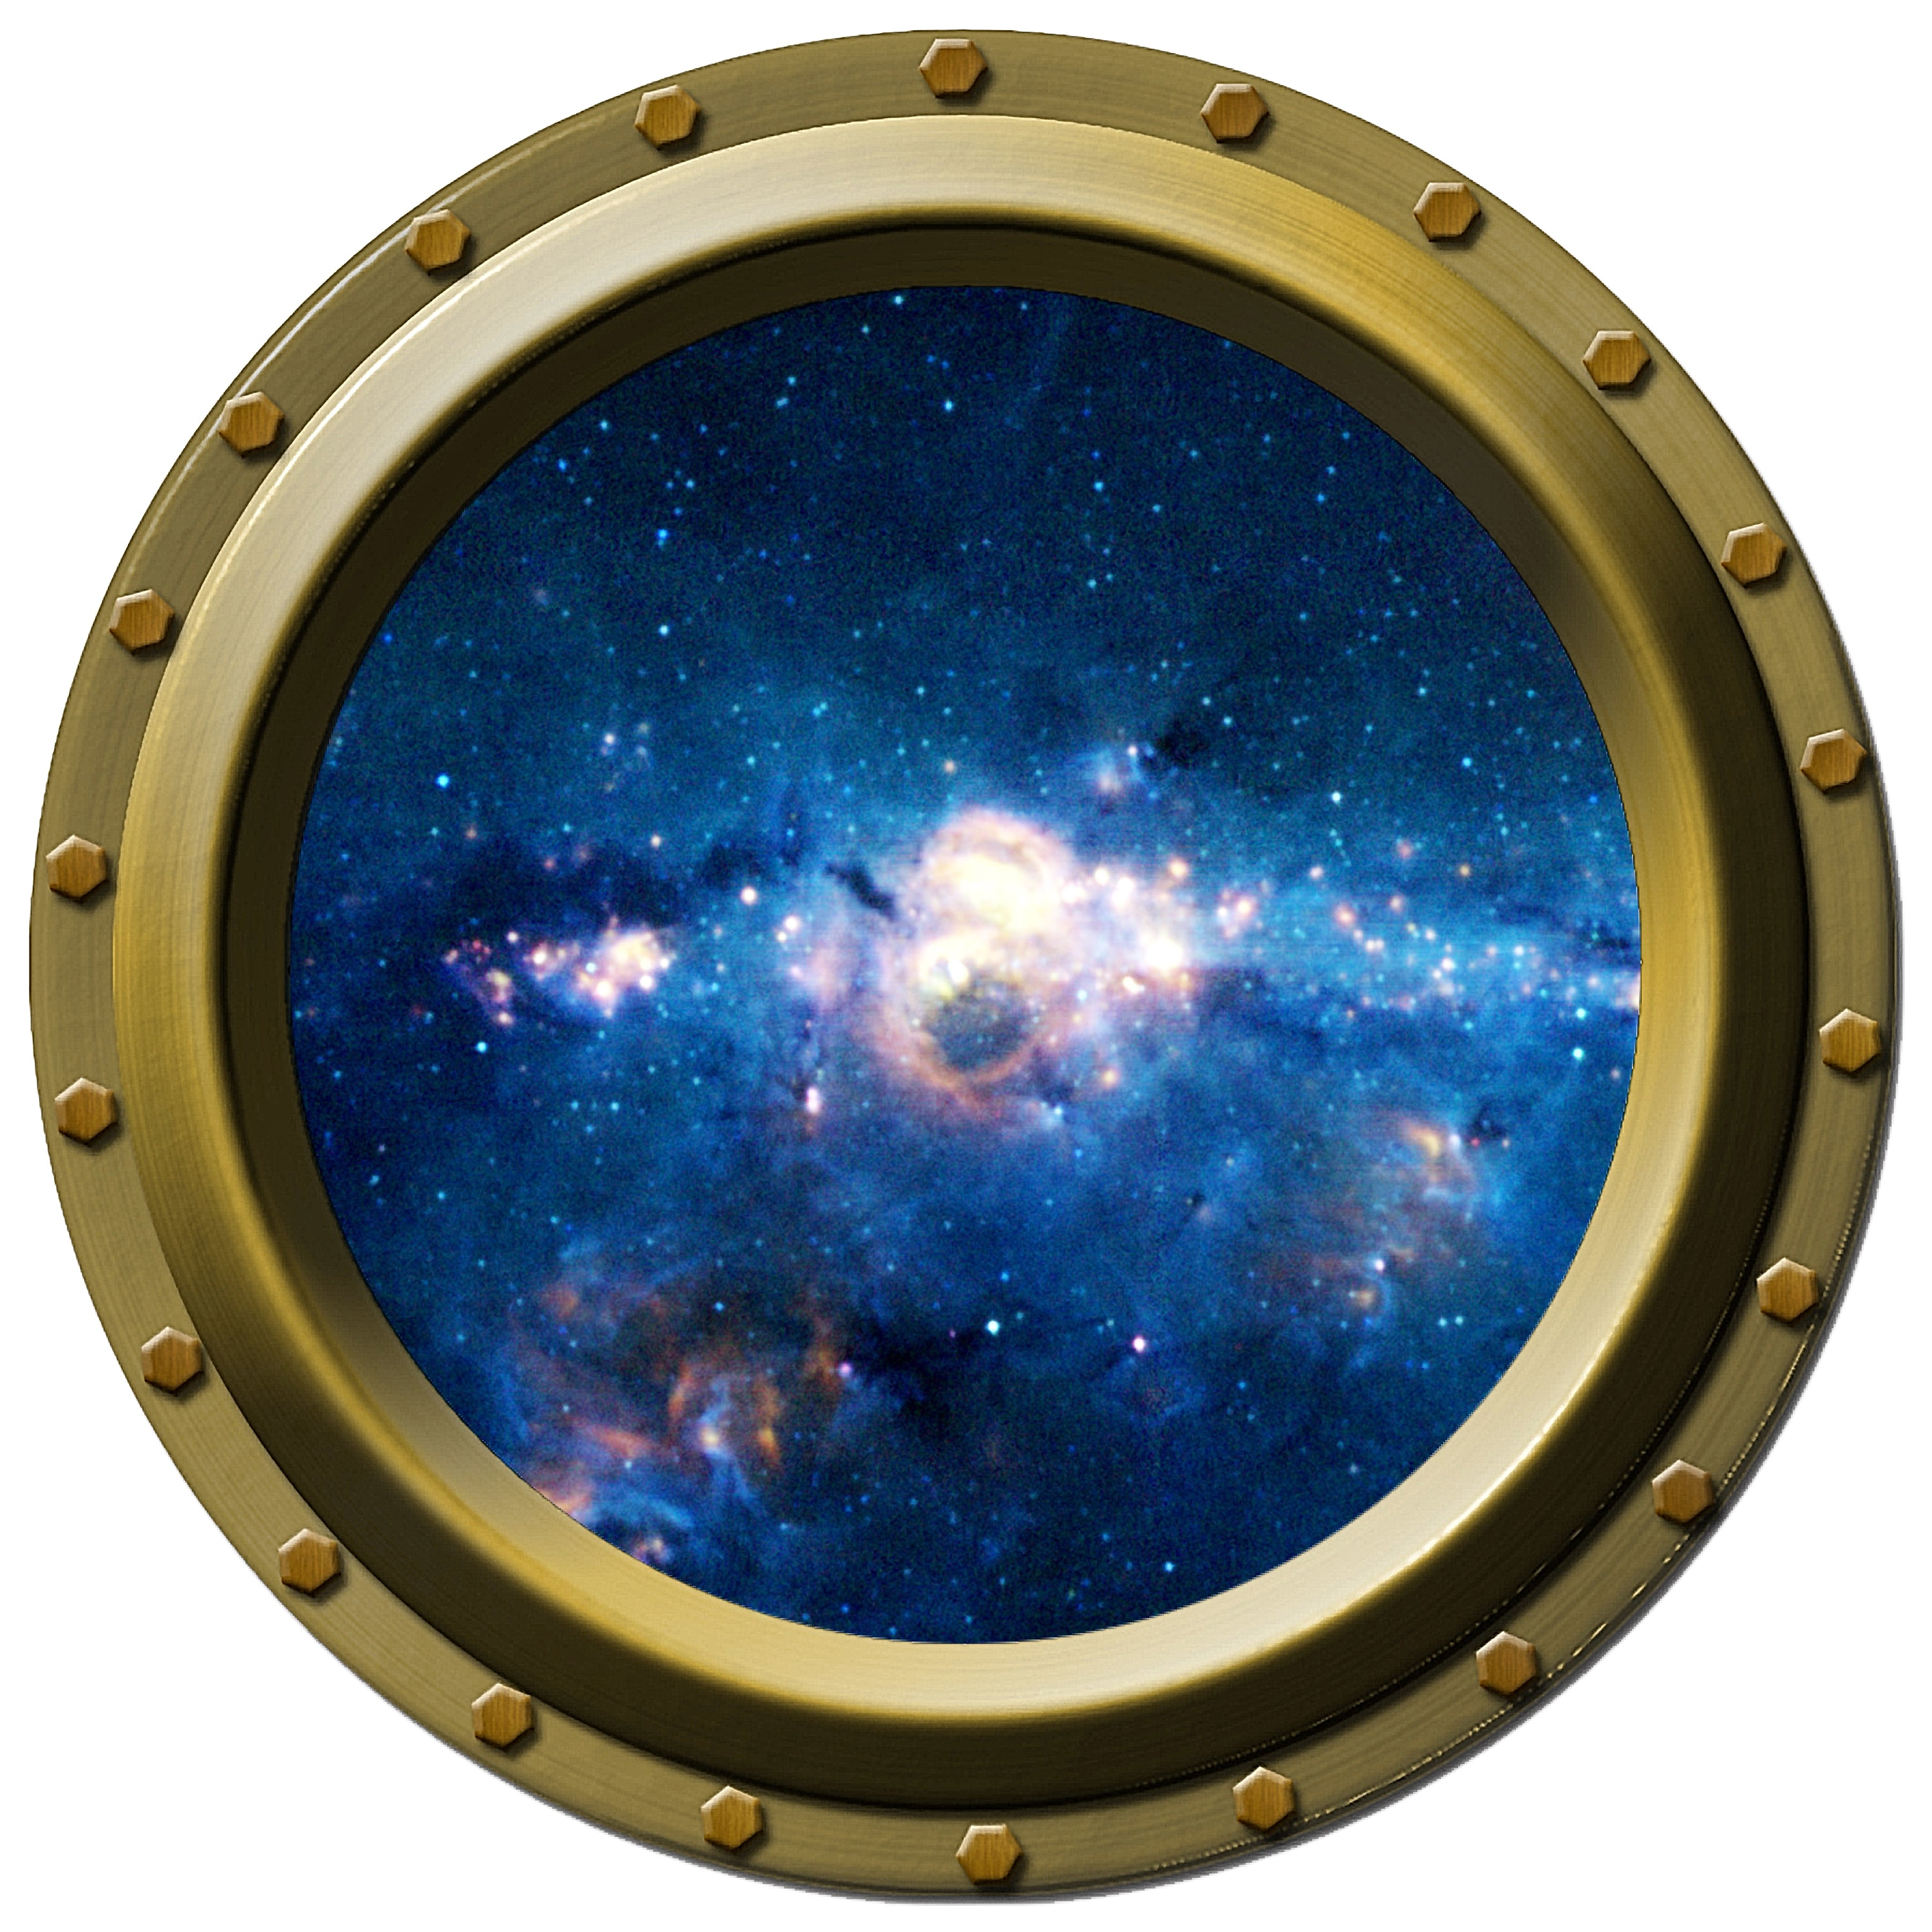 Galaxy Seen Through a Porthole Wall Decal